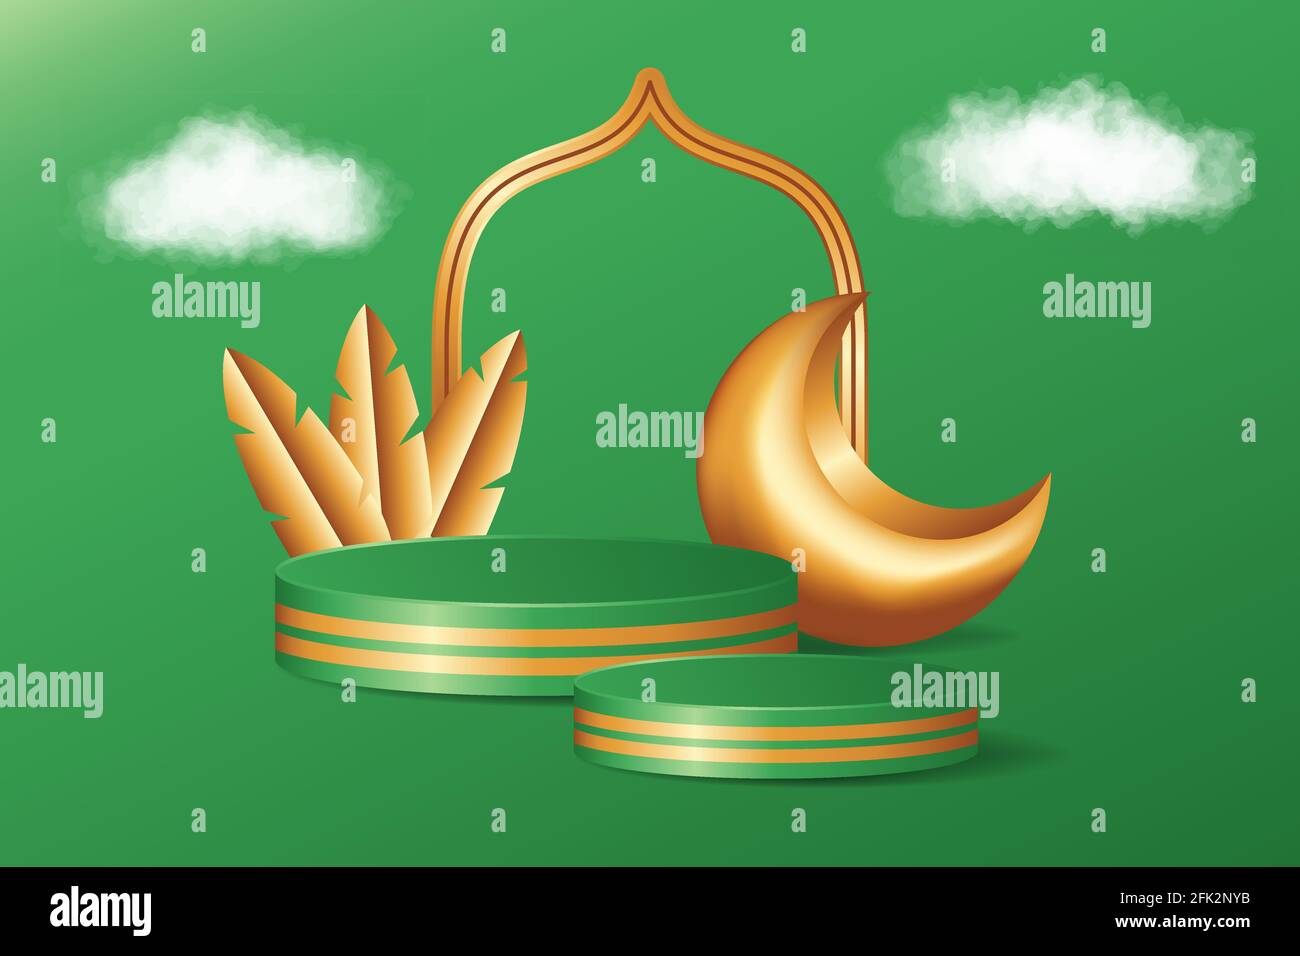 Décor de scène de piédestal en 3d islamique sur fond vert avec nuages réalistes, feuille dorée et croissant de lune. Présentation du produit adaptée à Ramad Illustration de Vecteur